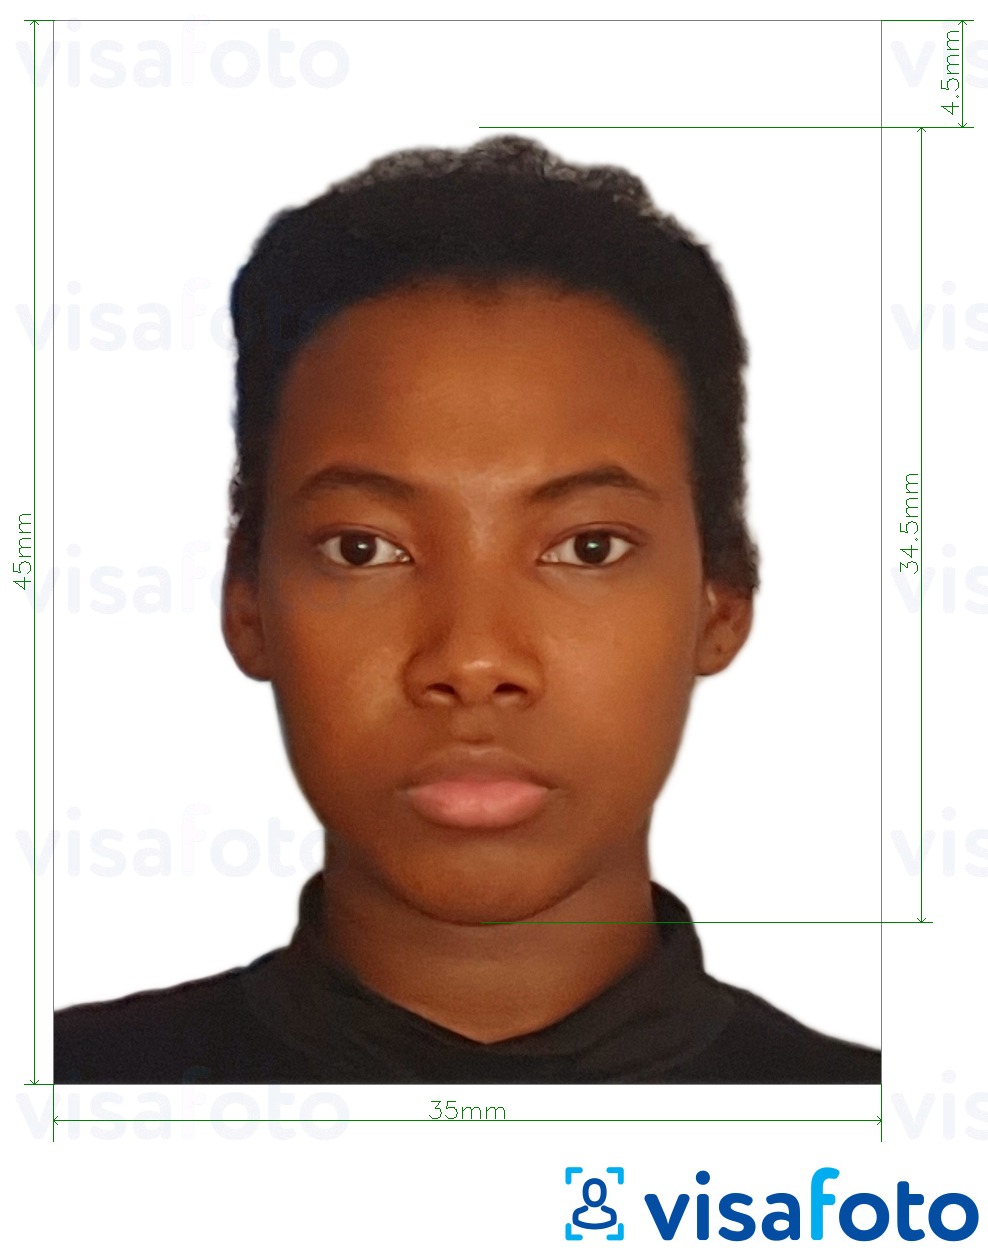  Nigeeria pass 35x45 mm fotonäidis koos täpse infoga mõõtude kohta.